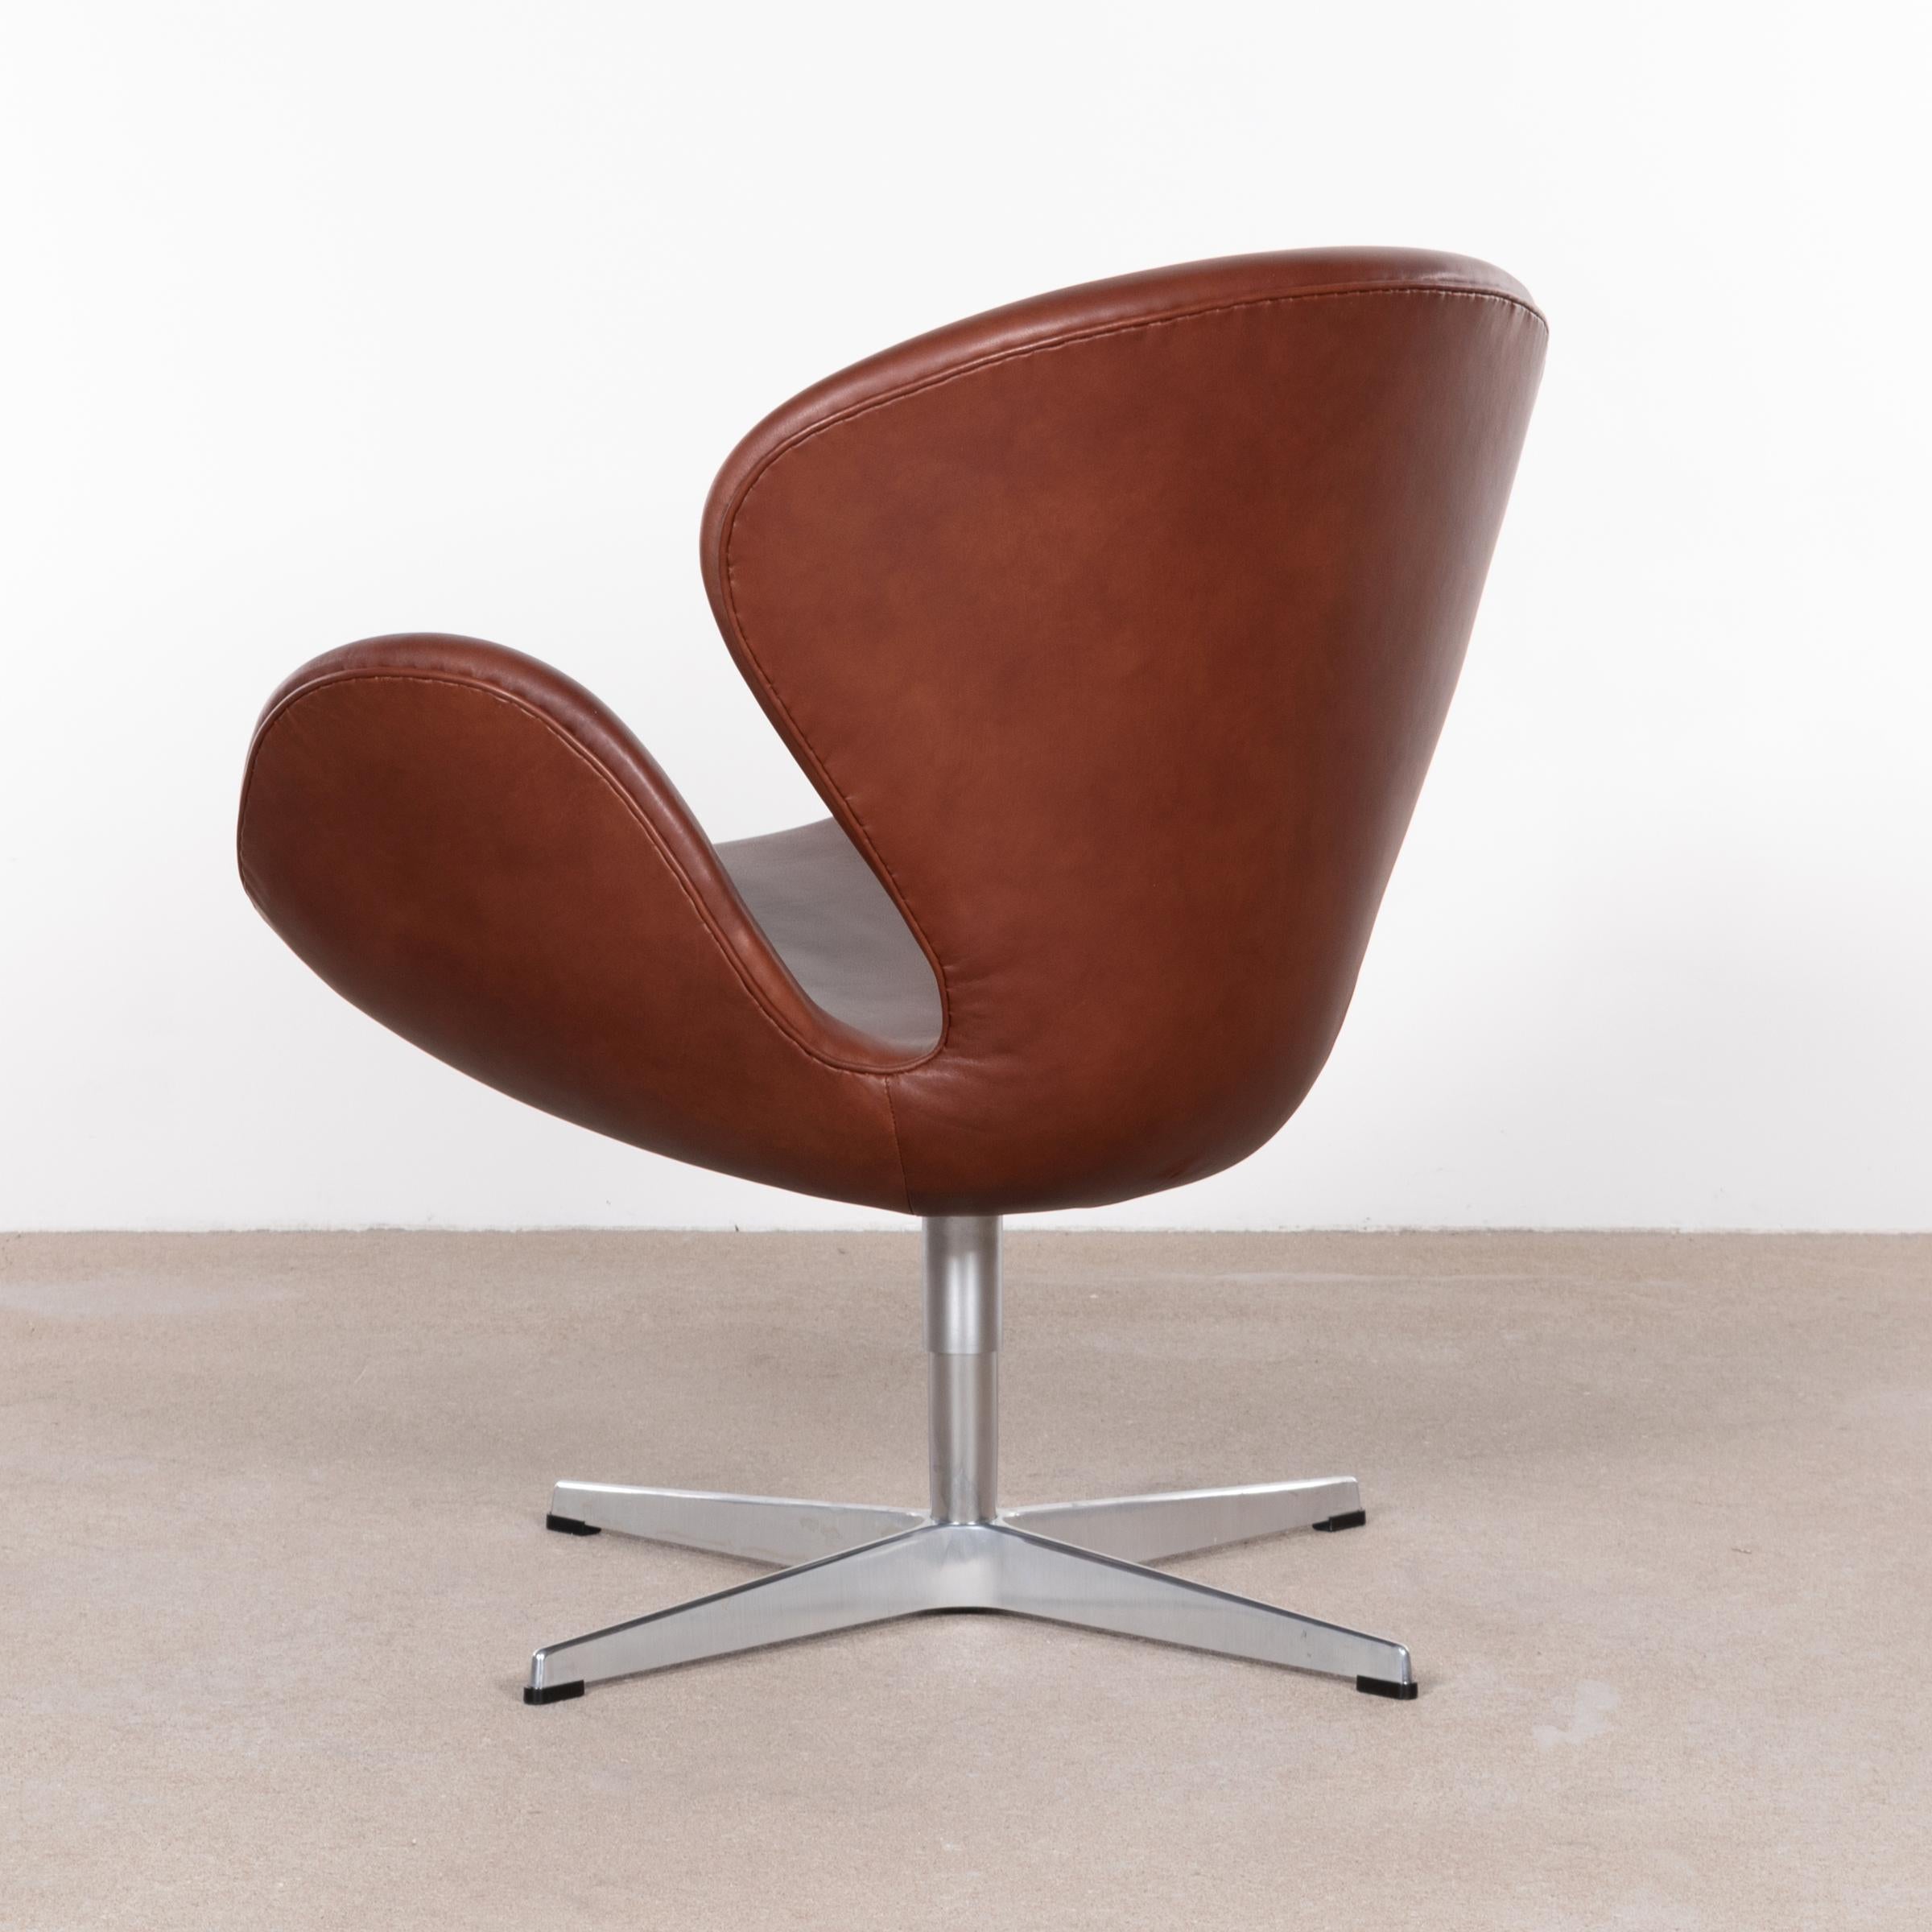 Mid-20th Century Arne Jacobsen Swan Chair 'Model 3320' in Brown Leather for Fritz Hansen Denmark